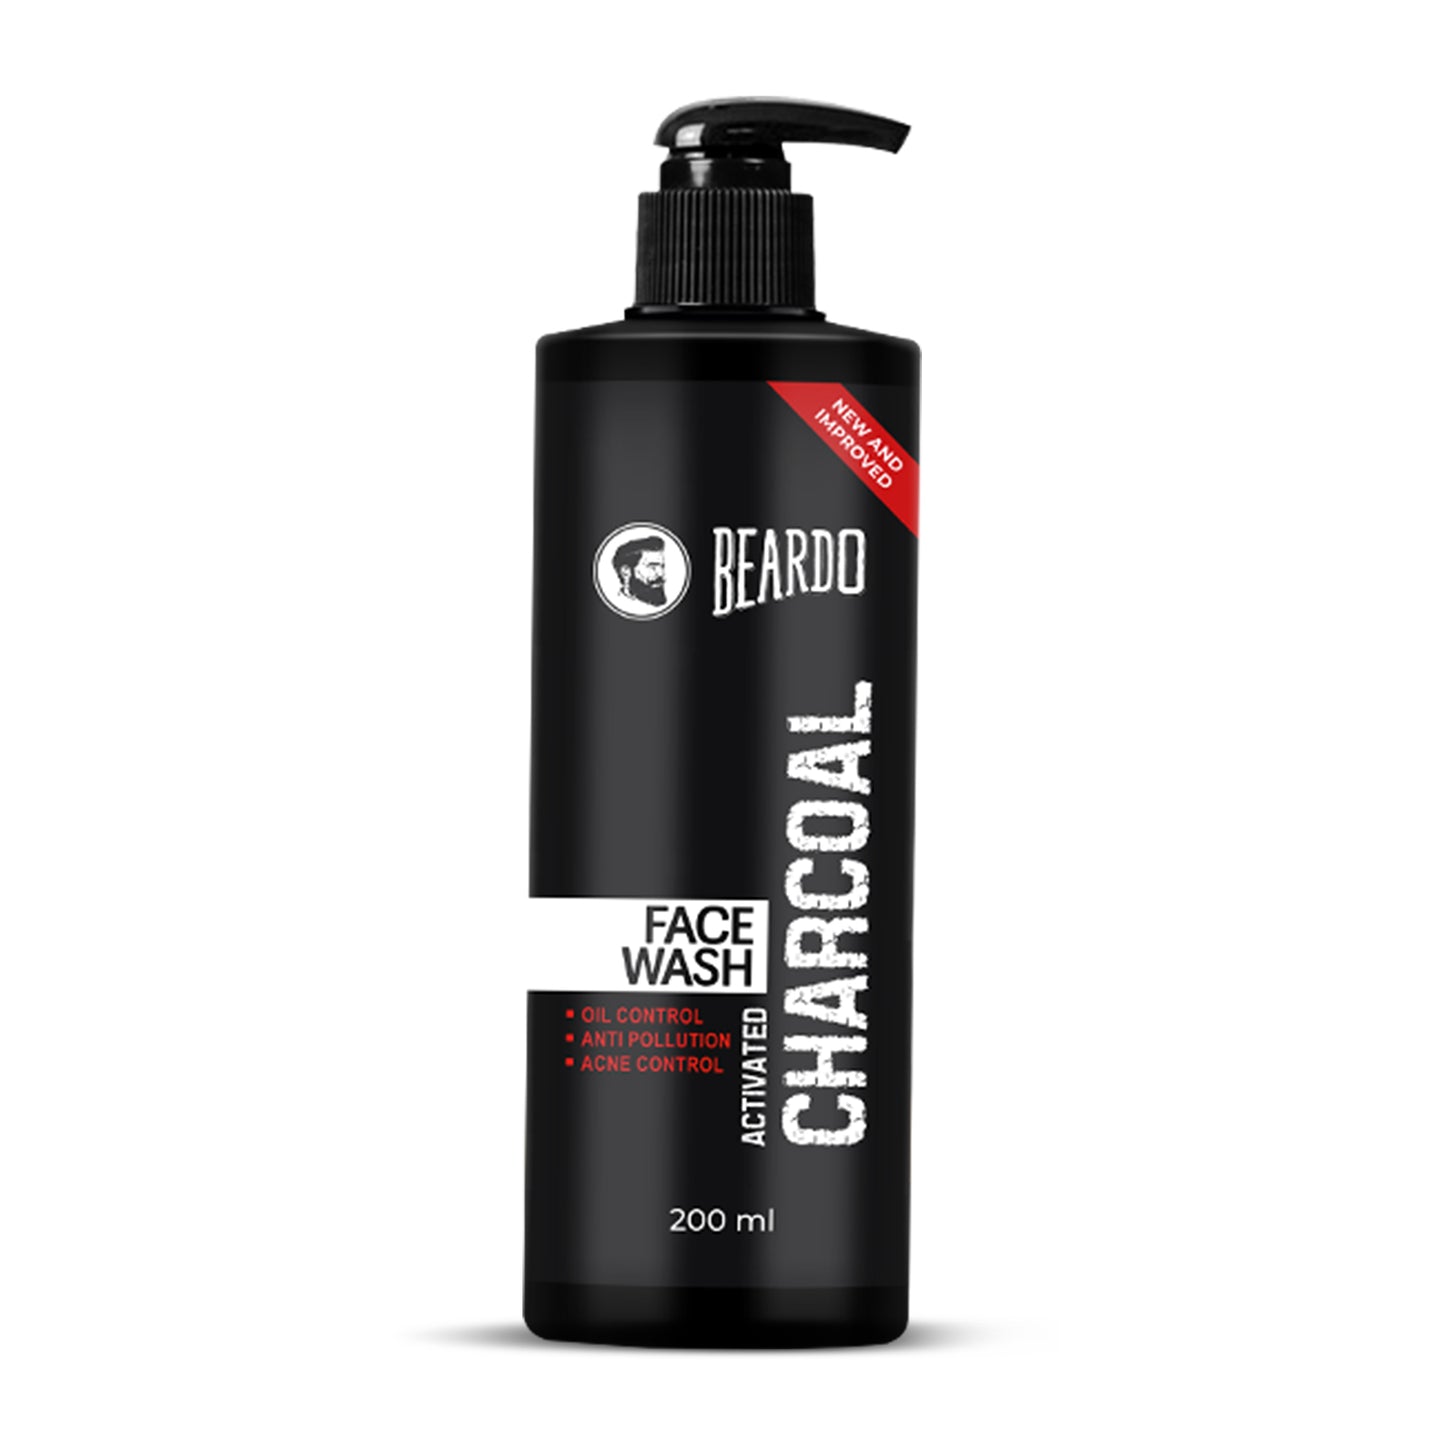 200ml activated charcoal facewash, facewash for men, best face wash for men, beardo charcoal face wash 200ml